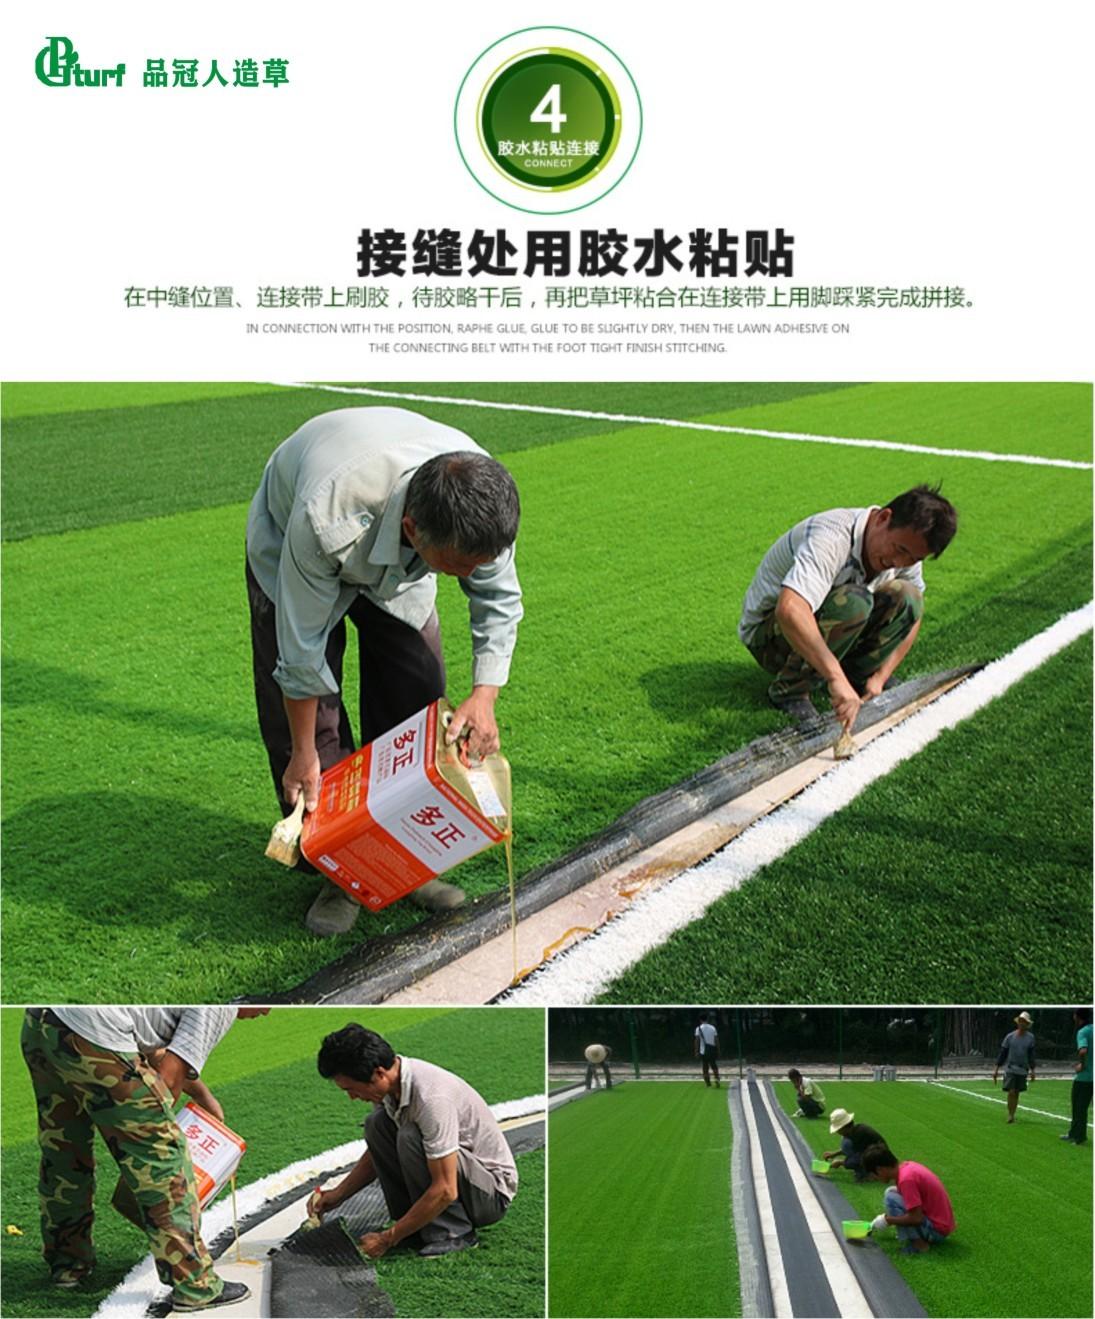 足球场草坪建设,足球场草坪尺寸